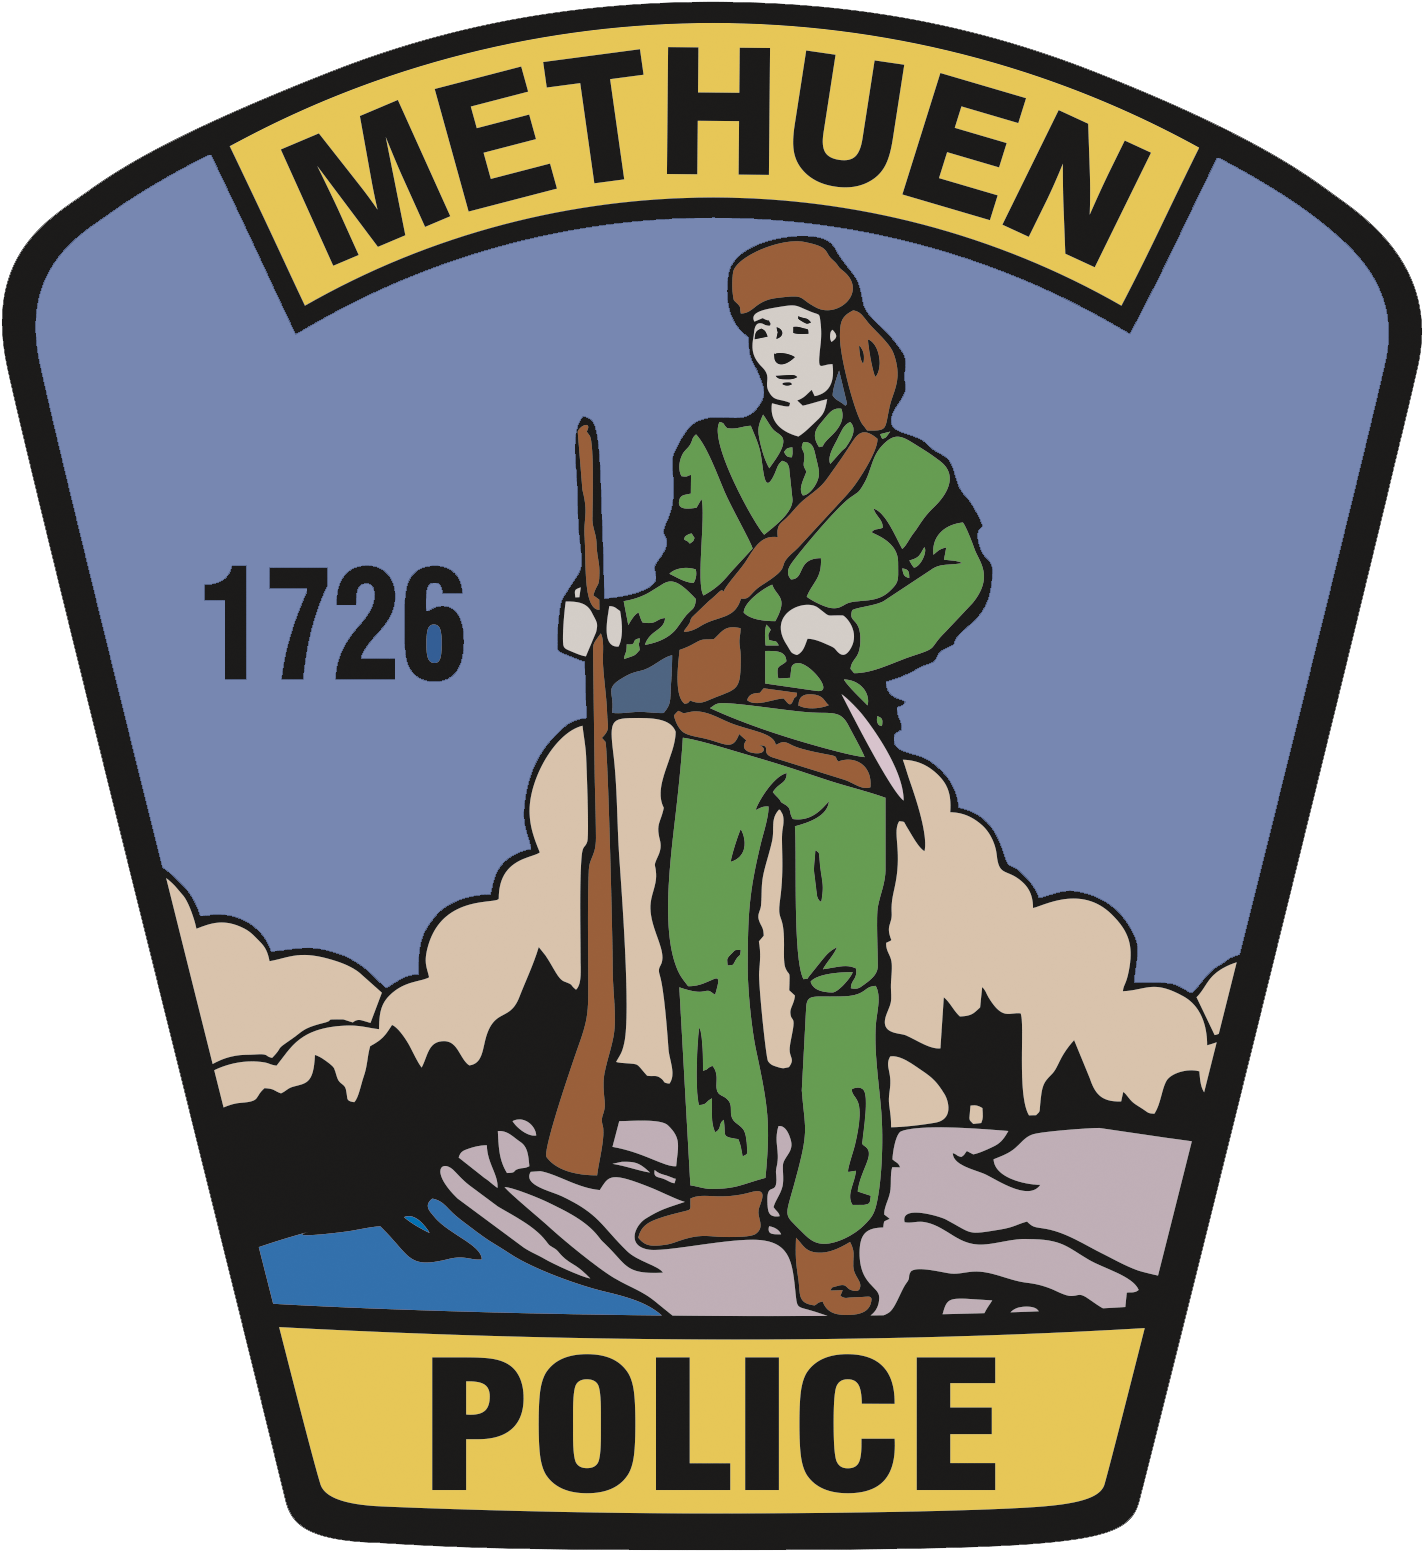 Methuen Police Department Joseph Solomon, Chief Of - Methuen Police Department (1800x1800)